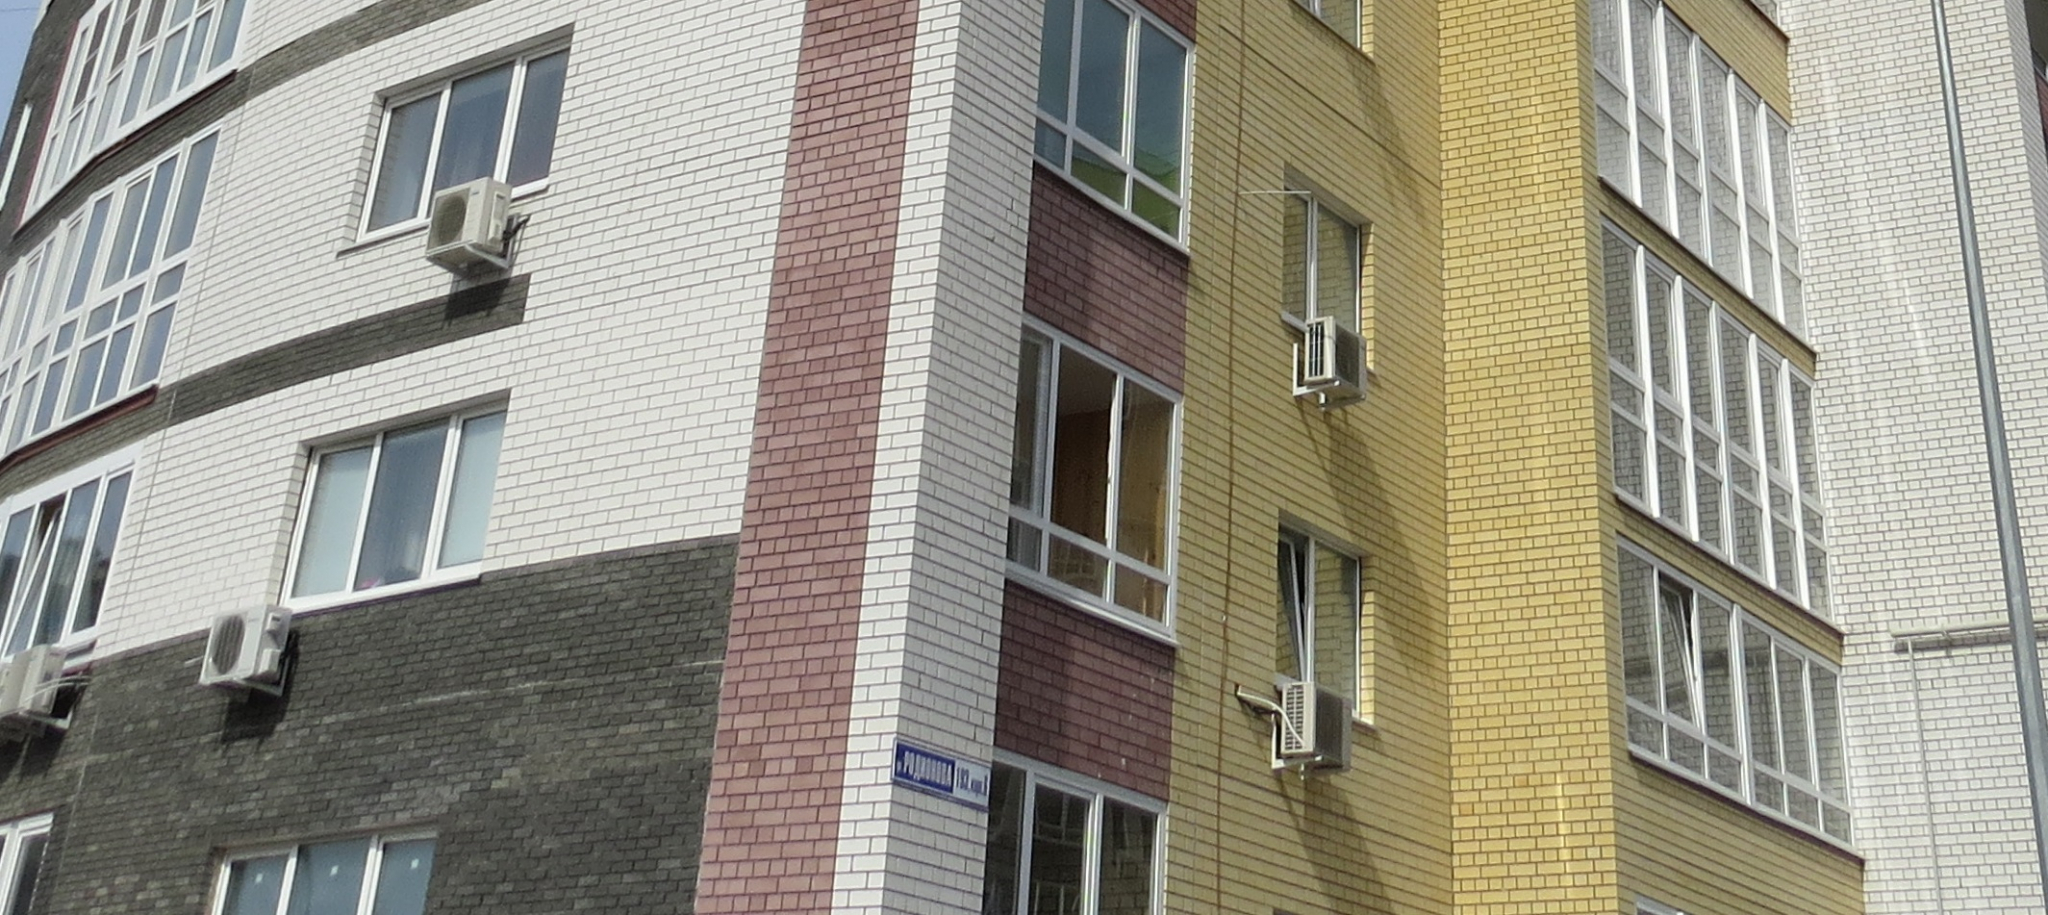 В Заволжье на стенах жилых домов рекламировали наркотики